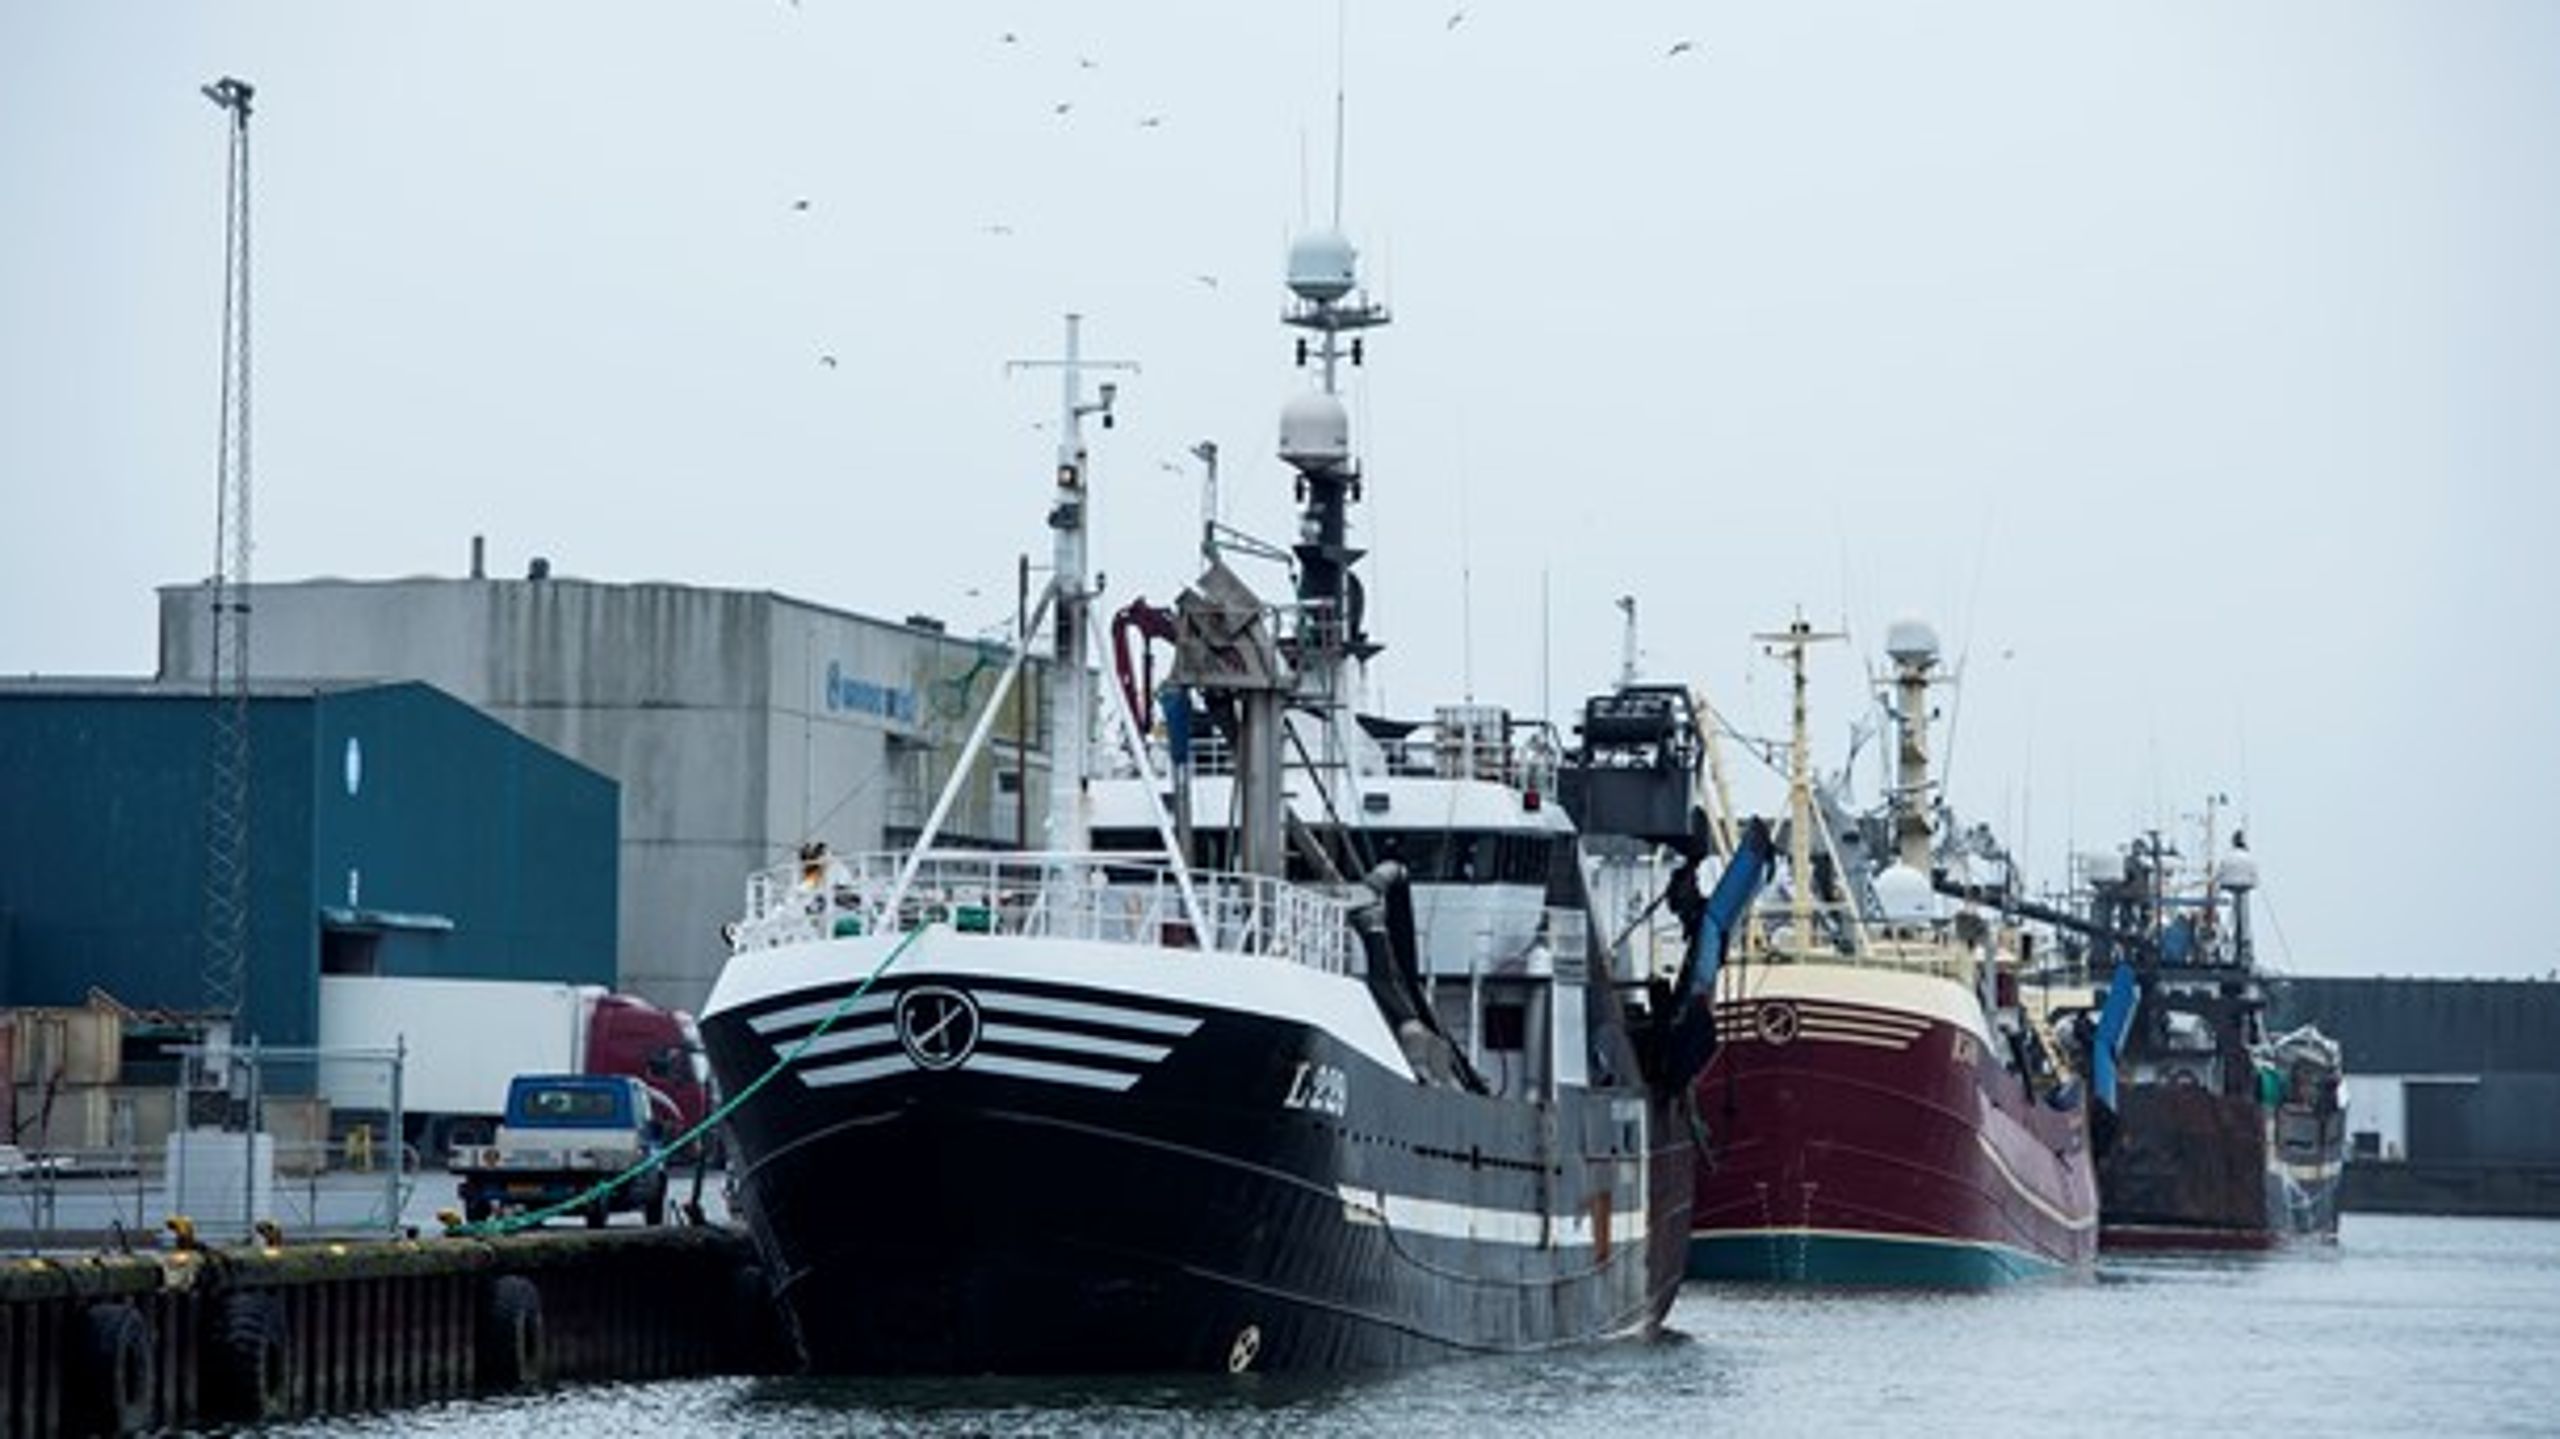 Rigsrevisionens undersøgelse af Miljø- og Fødevareministeriet har indikeret en række ulovlige forseelser blandt fiskere og fiskeriselskaber. Fotoet er af tilfældige fiskefartøjer i Thyborøn.&nbsp;